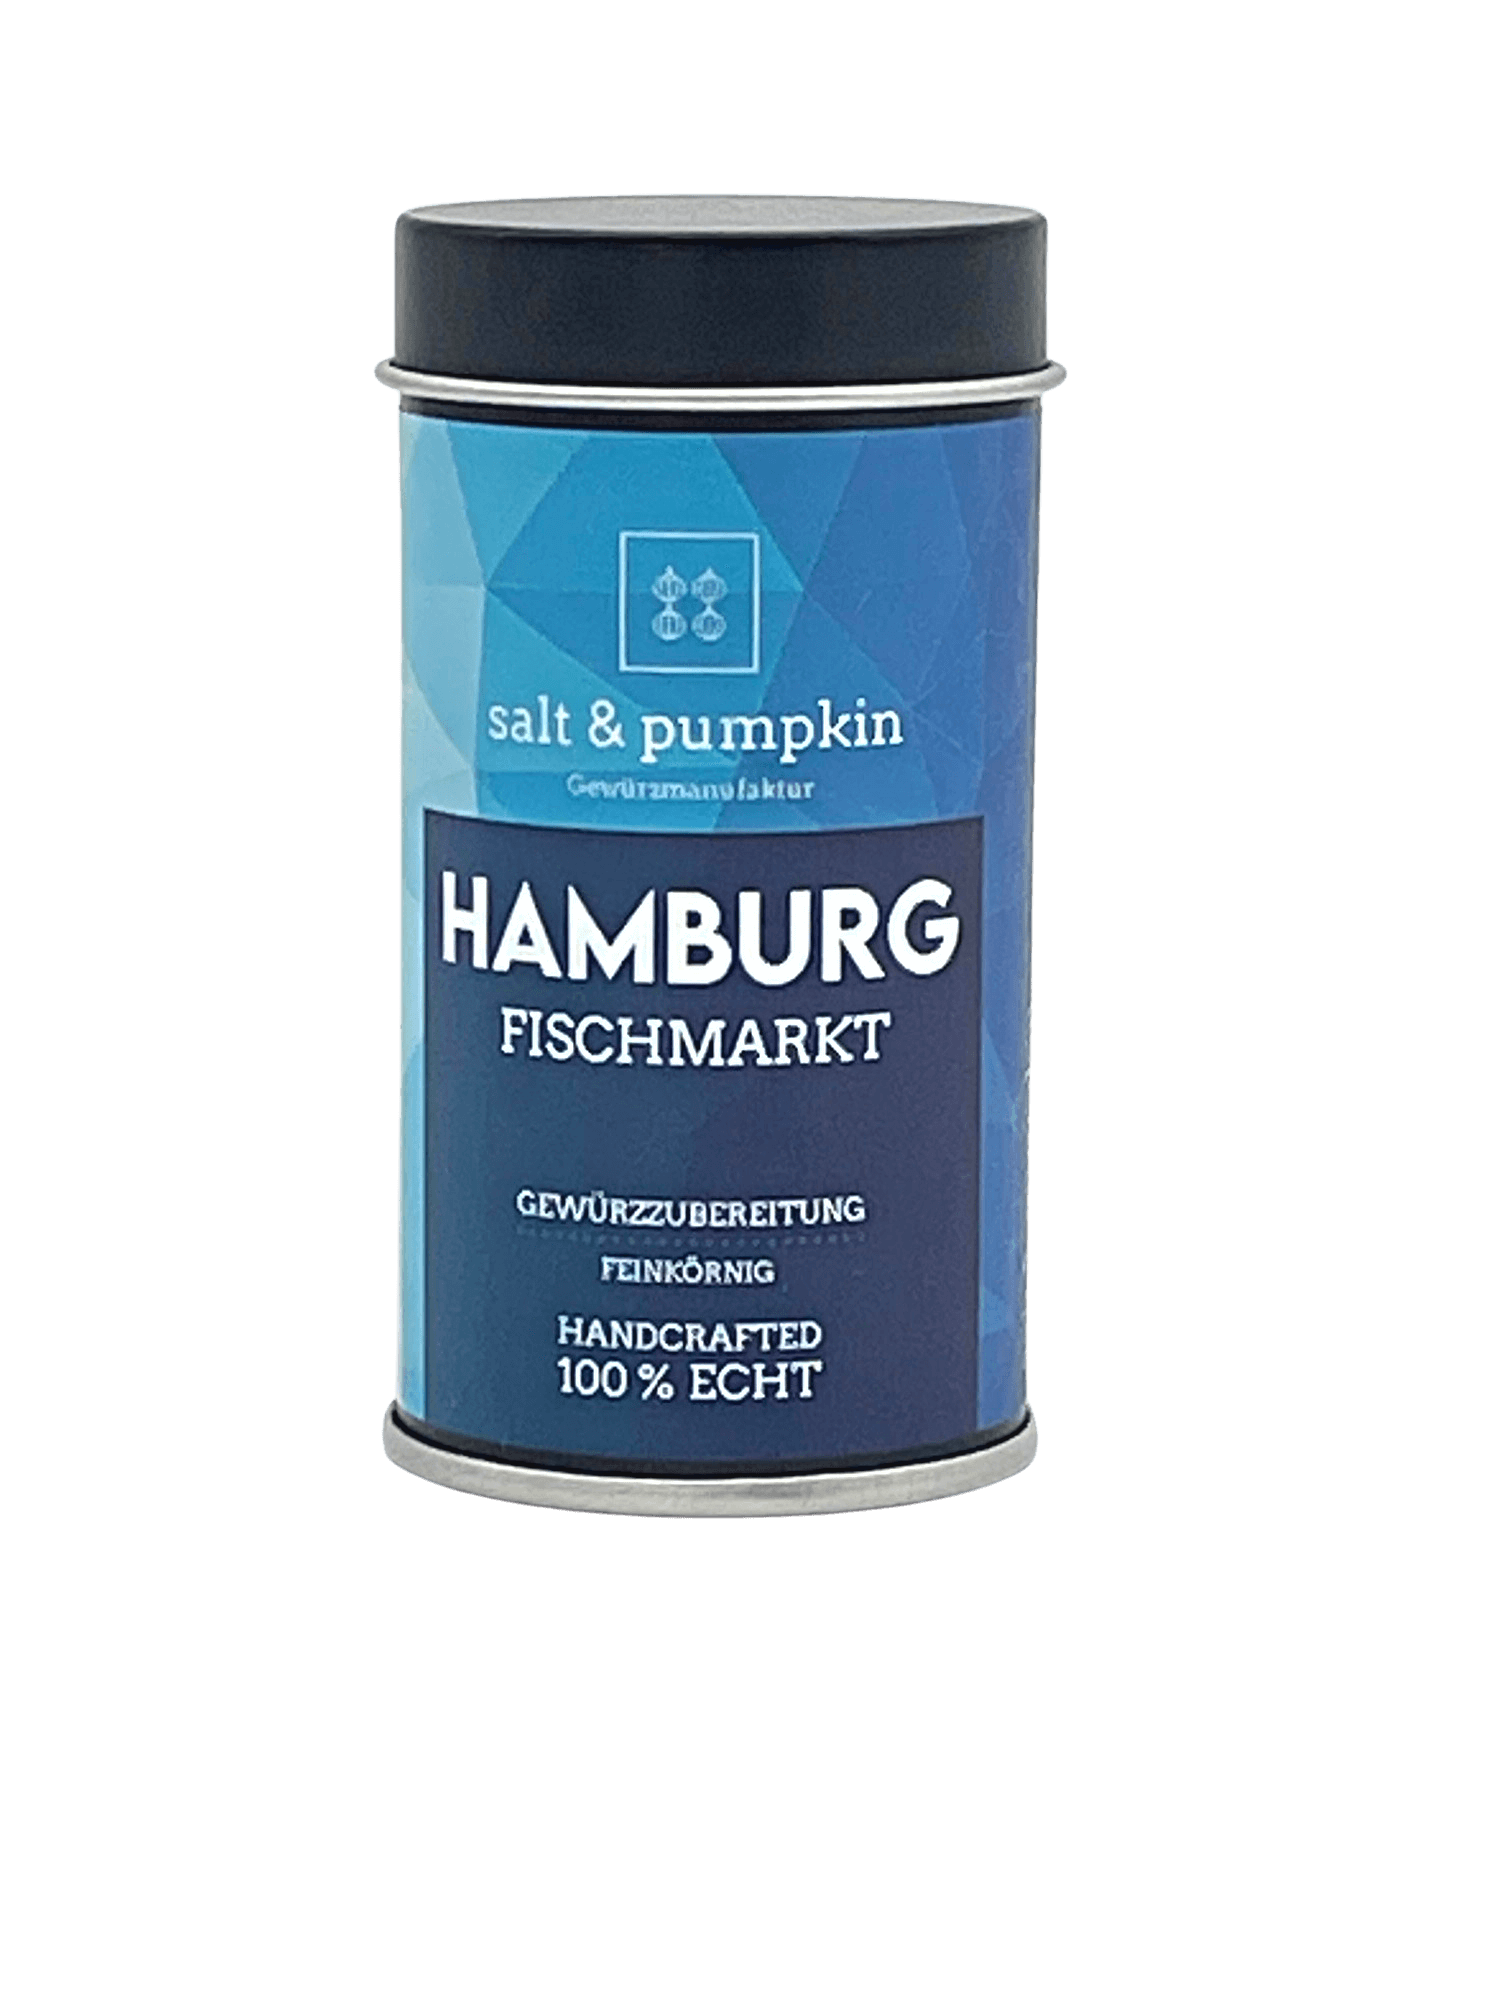 HAMBURG – FISCHMARKT